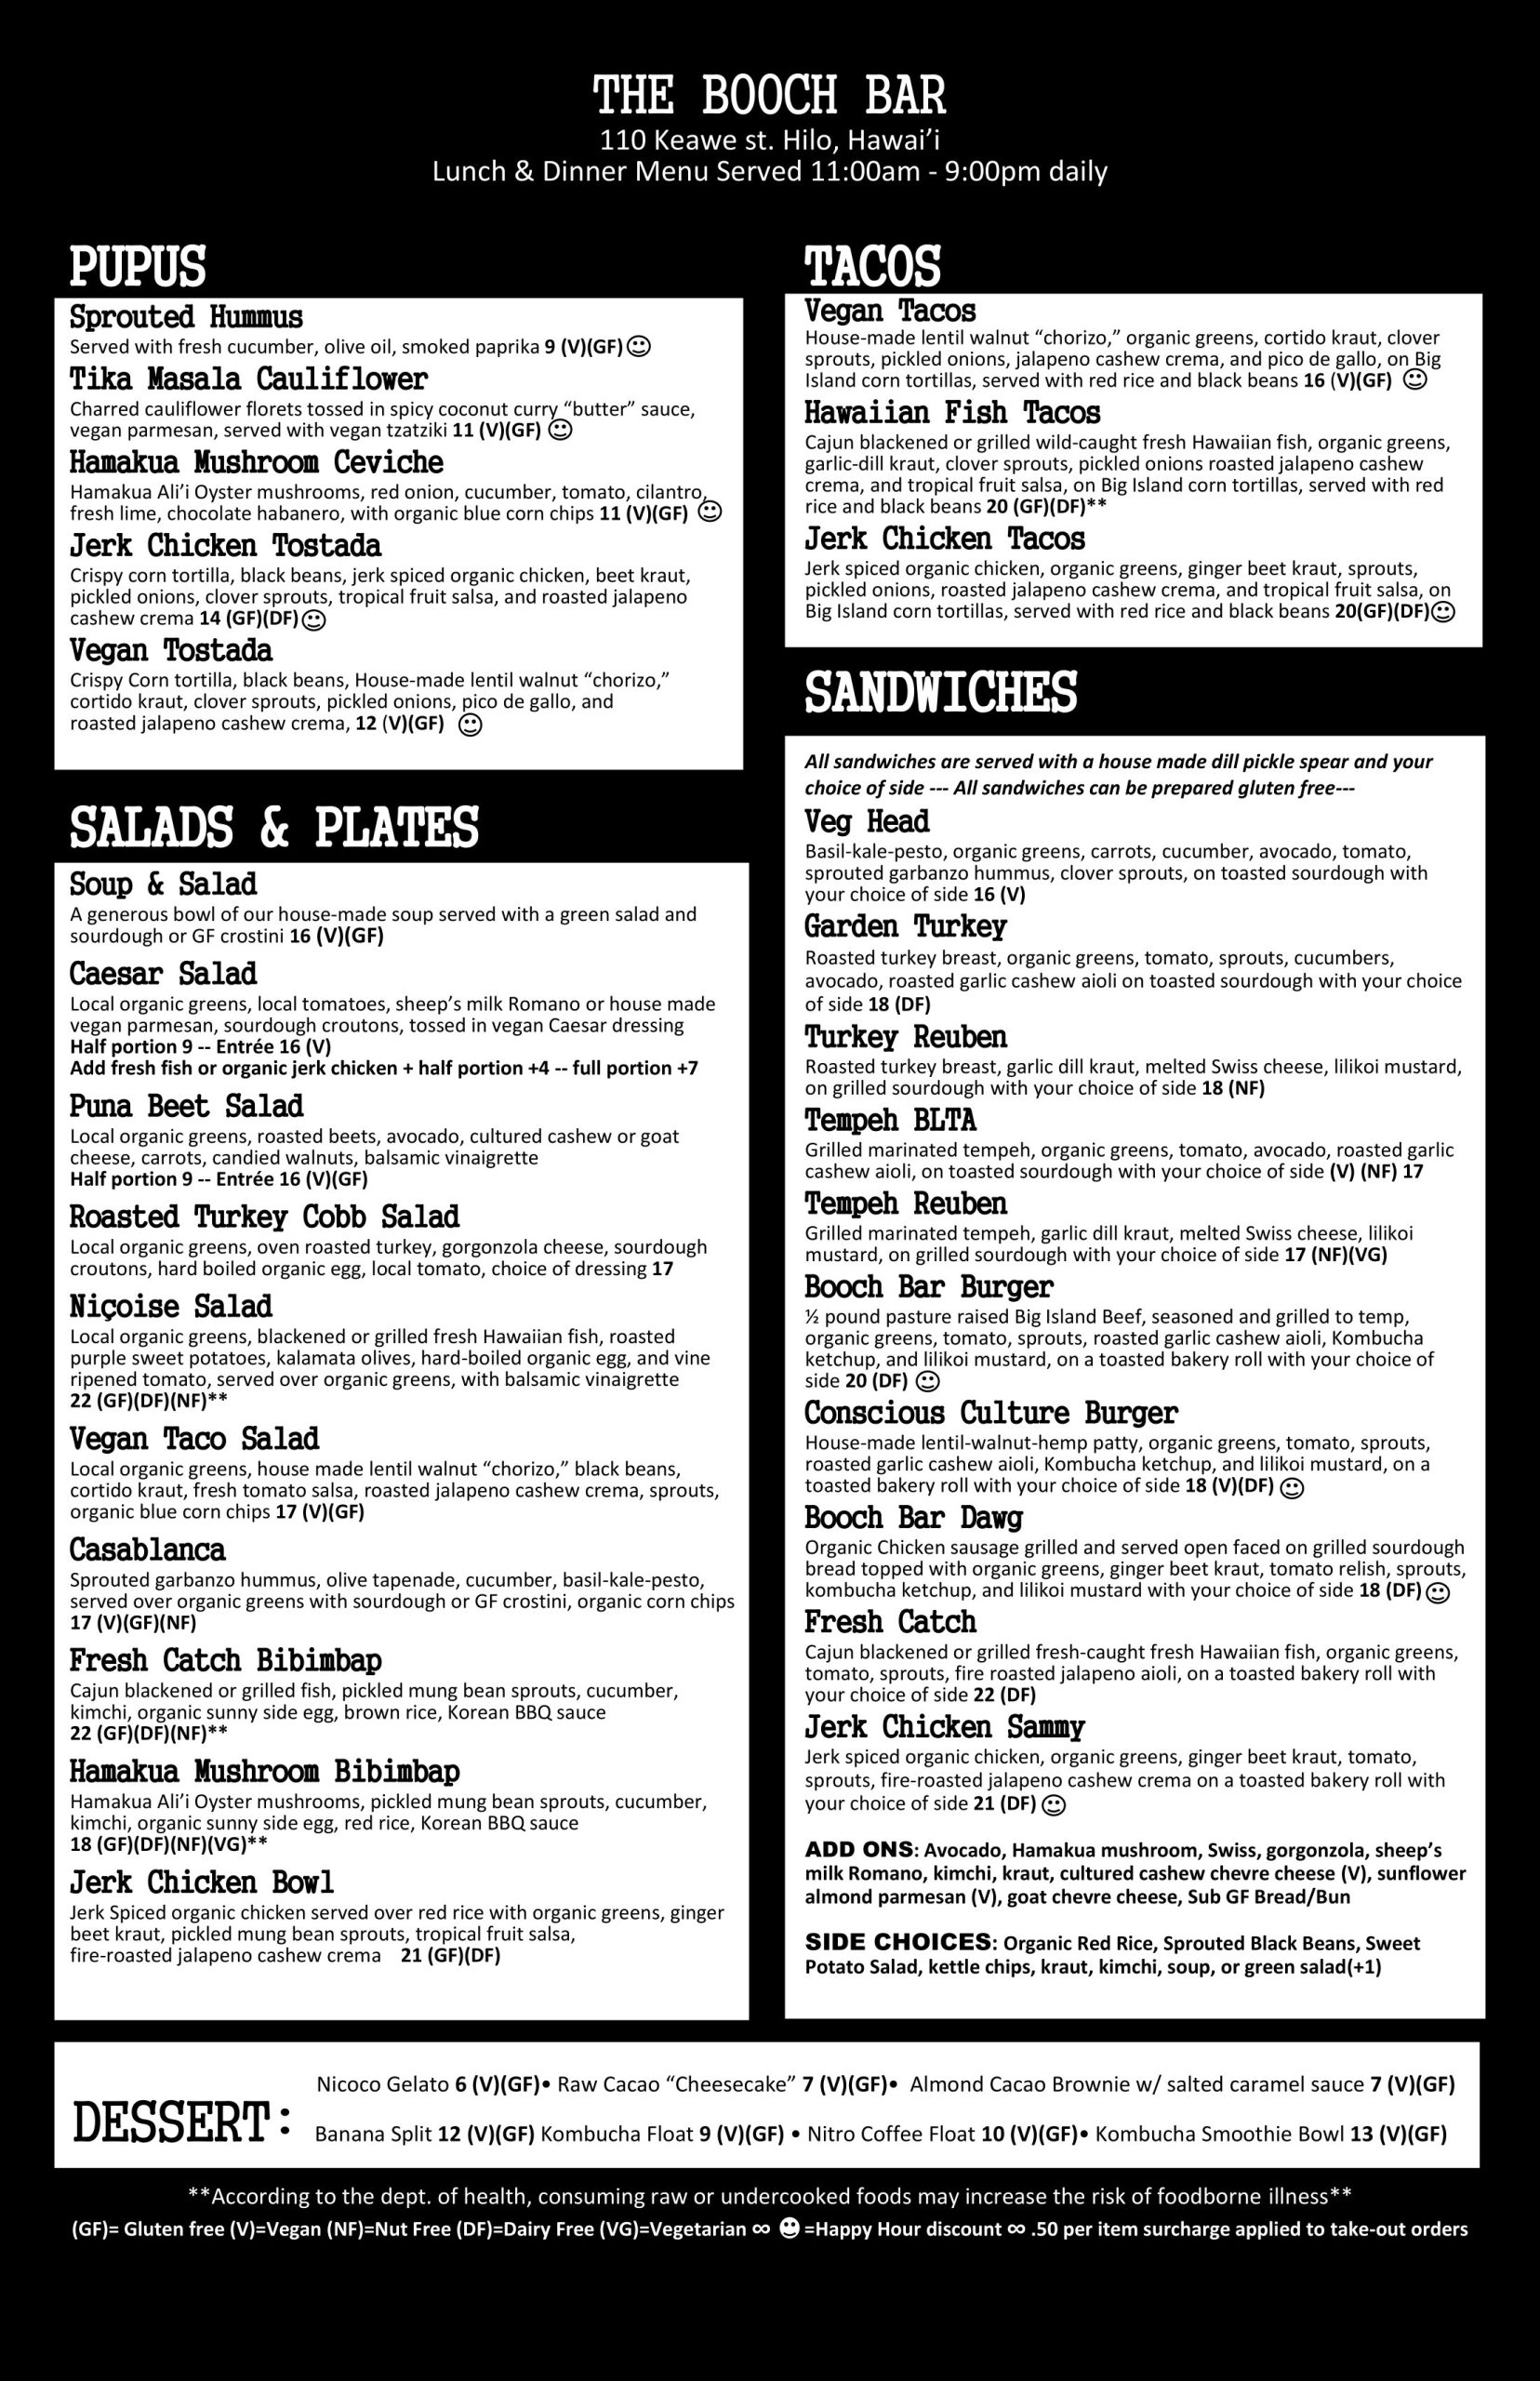 The Booch Bar lunch menu updated 08/08/23